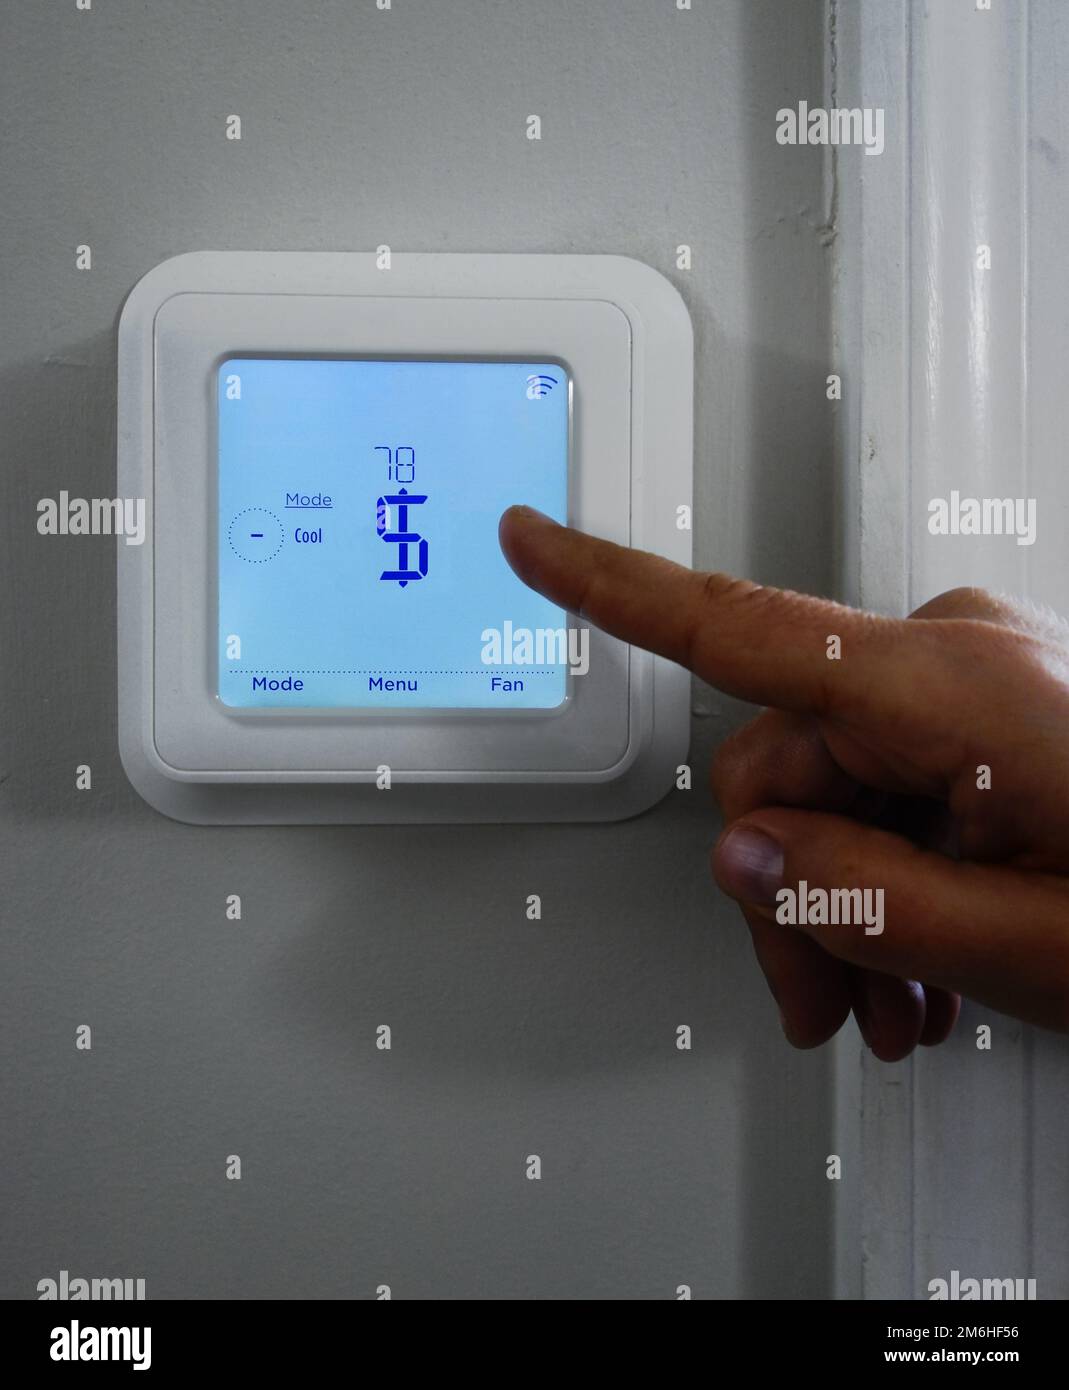 Zeige mit dem Finger auf ein Dollarzeichen auf einem intelligenten Thermostat -- Kostenkonzept für Heizung und Kühlung Stockfoto